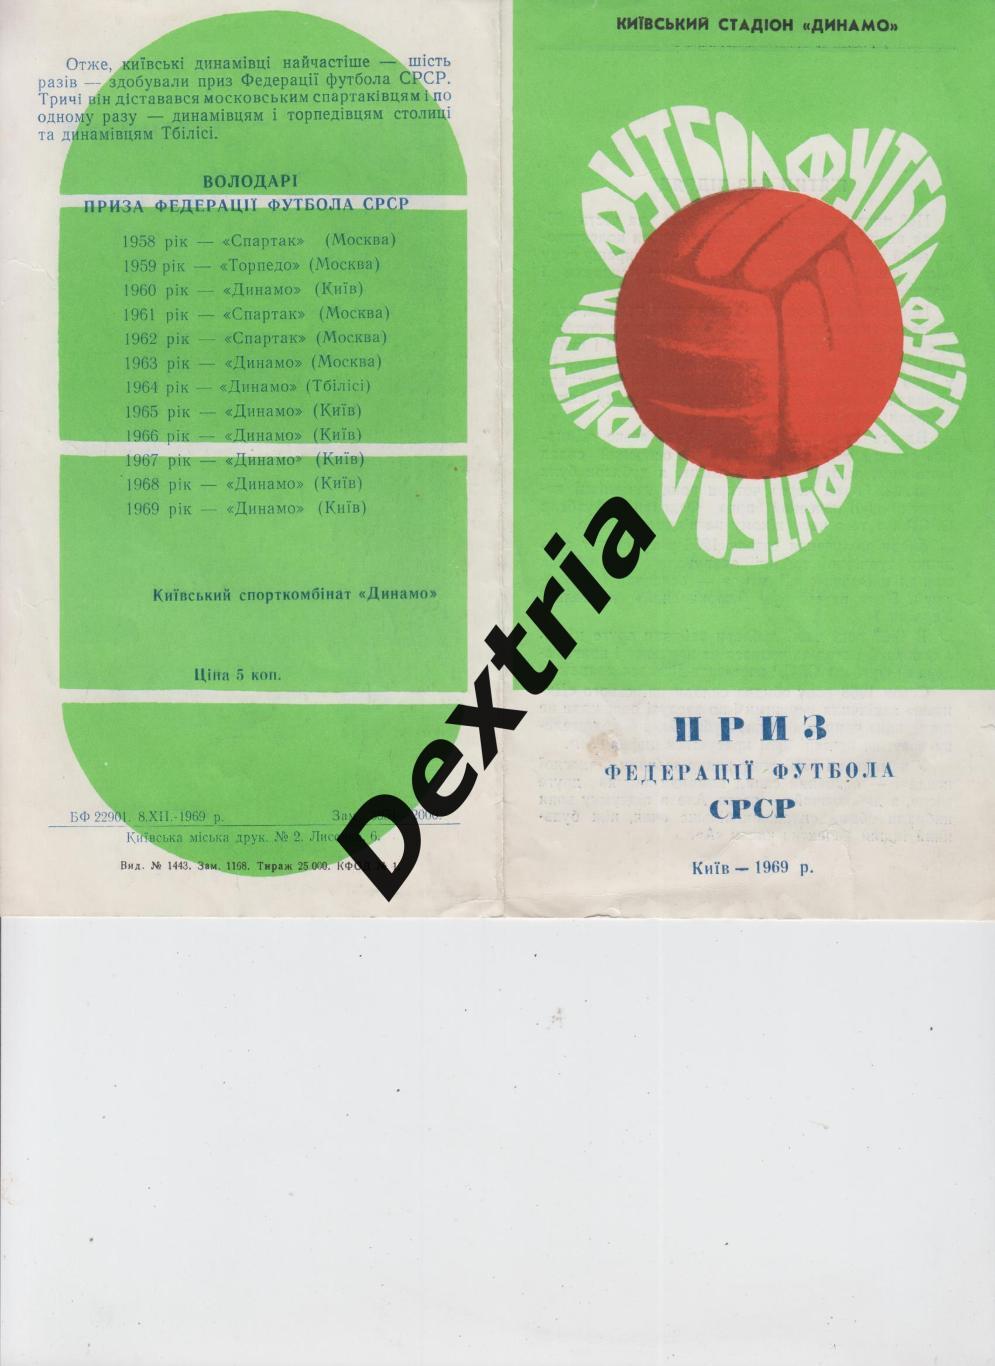 Динамо Киев 1969. Приз Федерации футбола СССР.